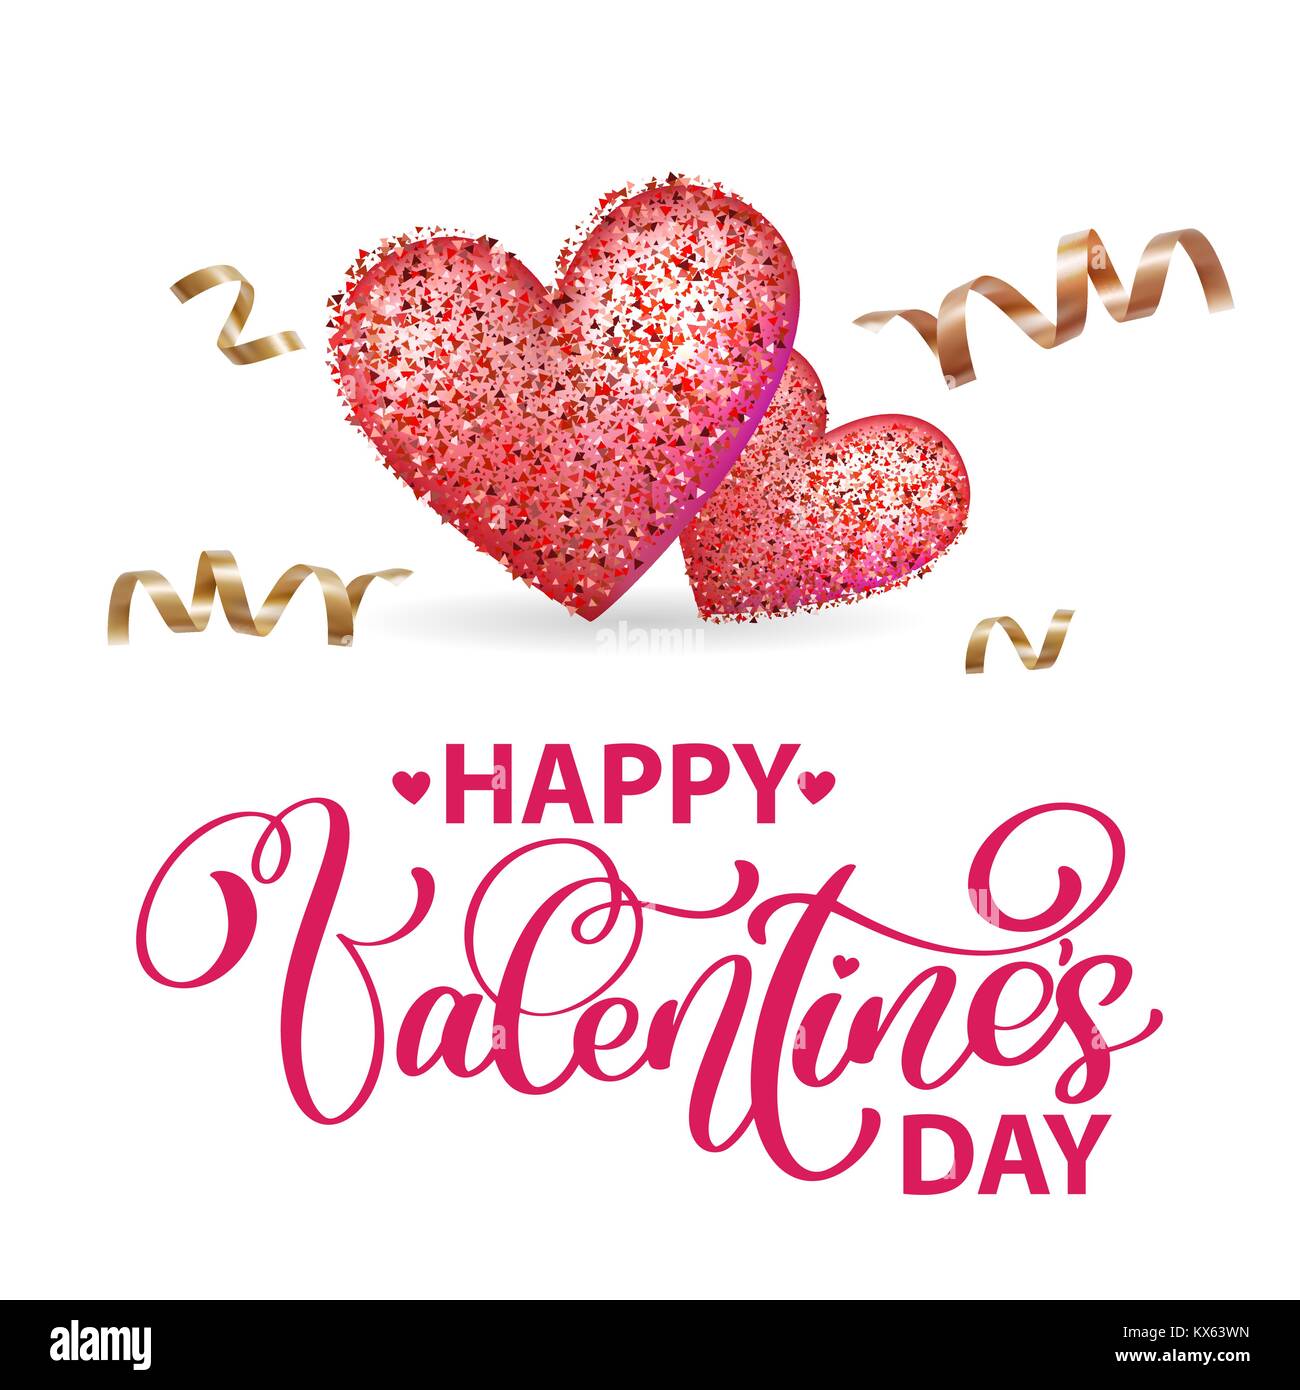 Happy Valentines Day Greeting card romantique avec coeur d'or et la serpentine, typographie poster avec la calligraphie moderne. Vector Illustration Illustration de Vecteur